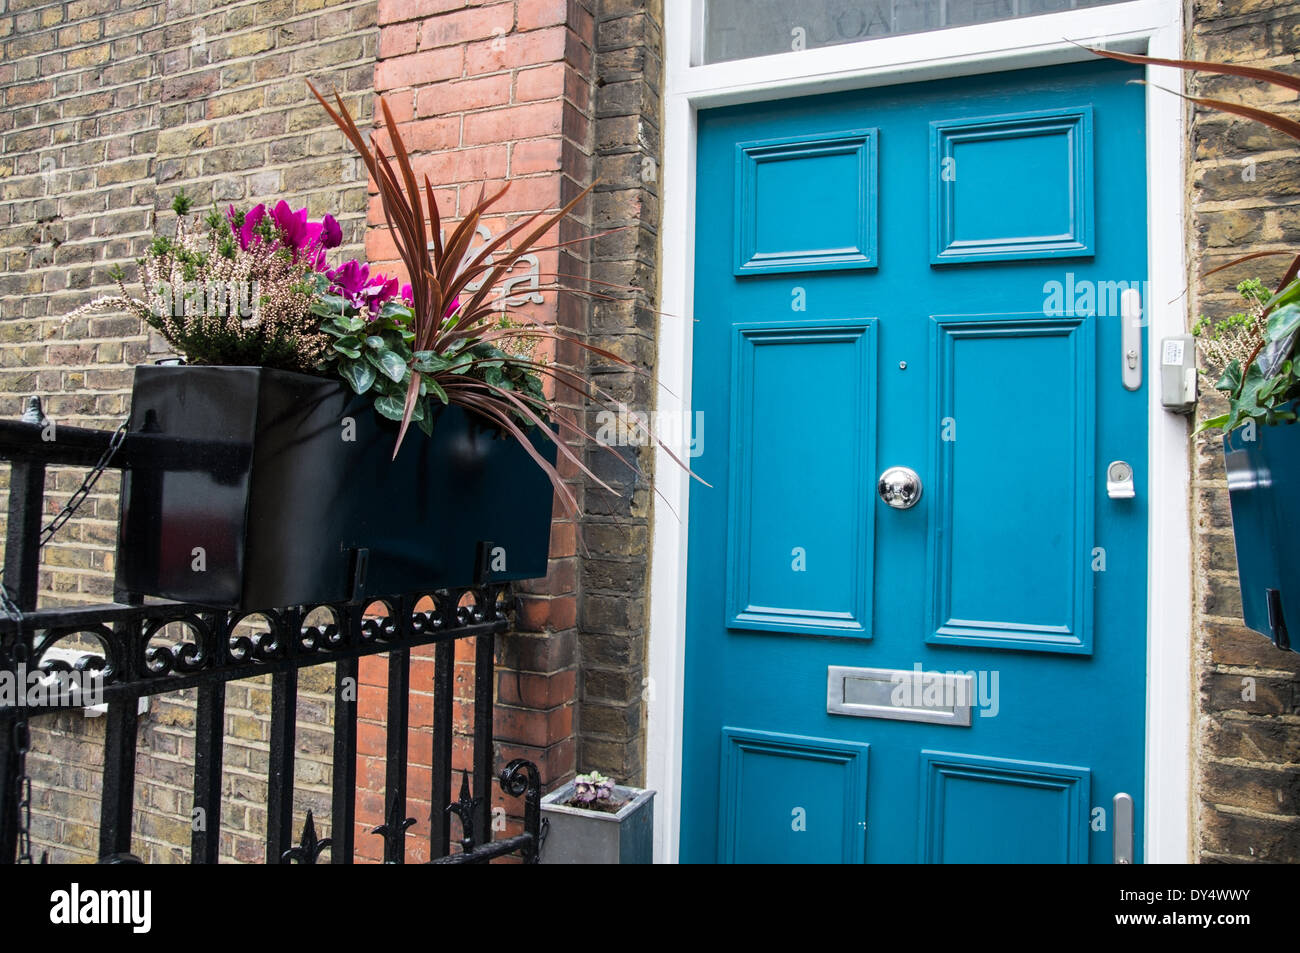 Porte Bleue, Marylebone Londres Angleterre Royaume-Uni UK Banque D'Images